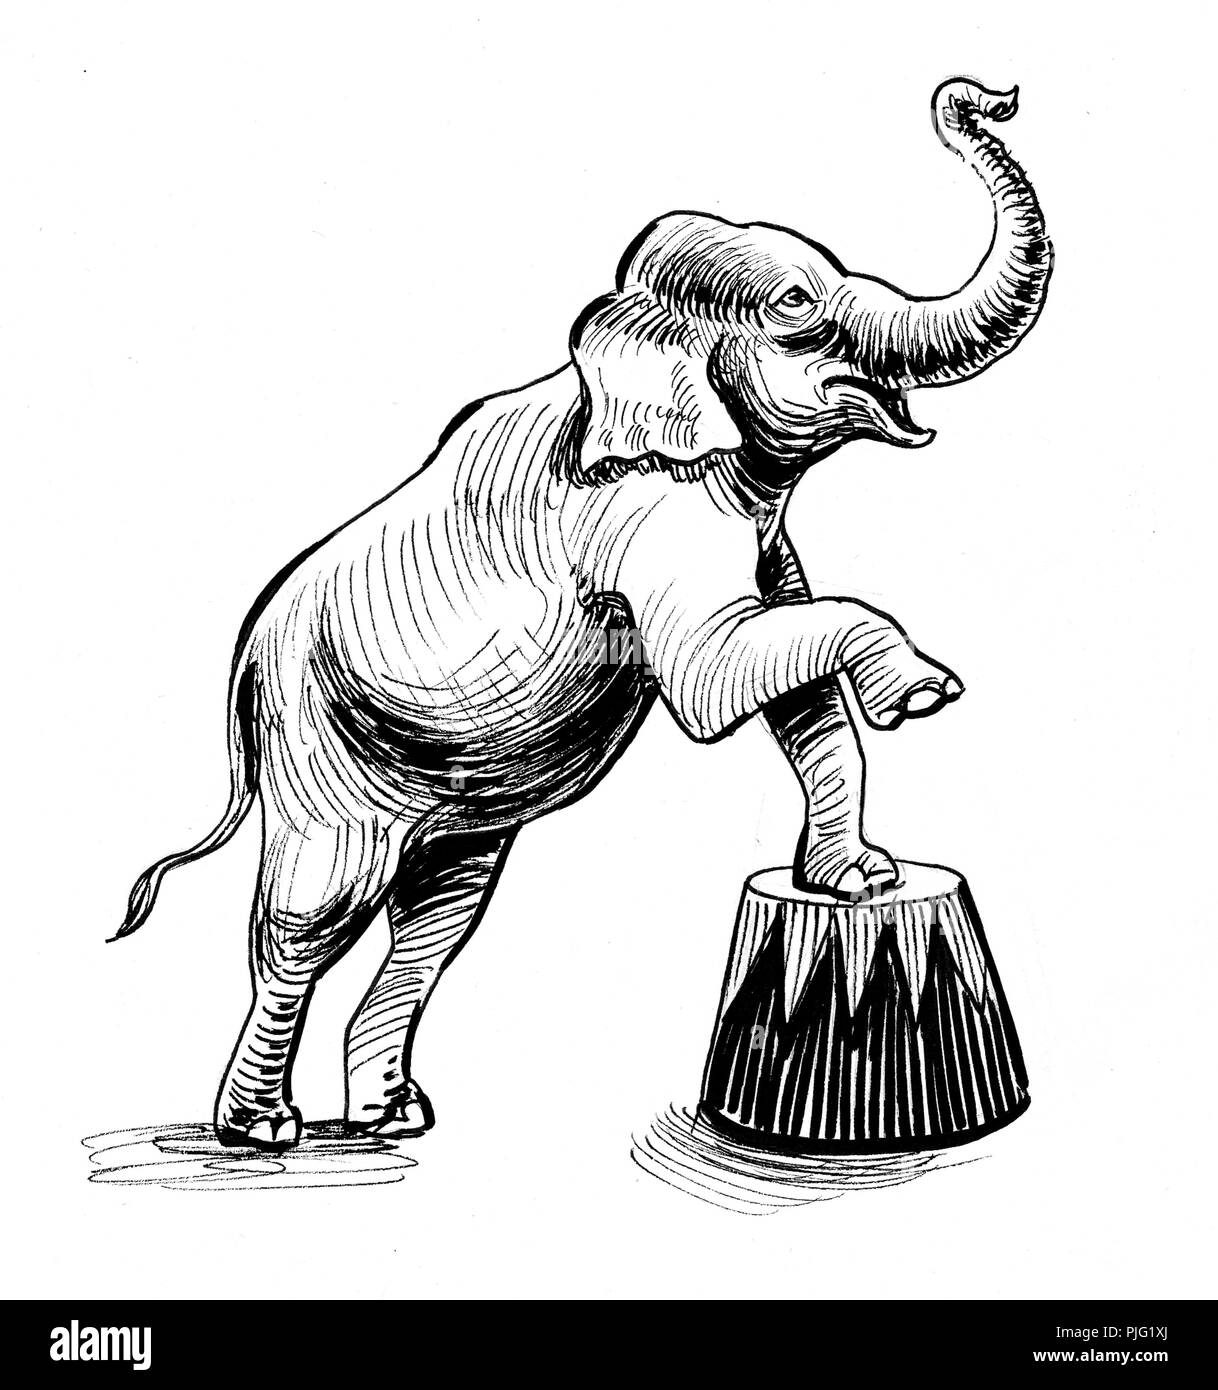 Realizacion De Elefante En El Circo Dibujo En Blanco Y Negro De